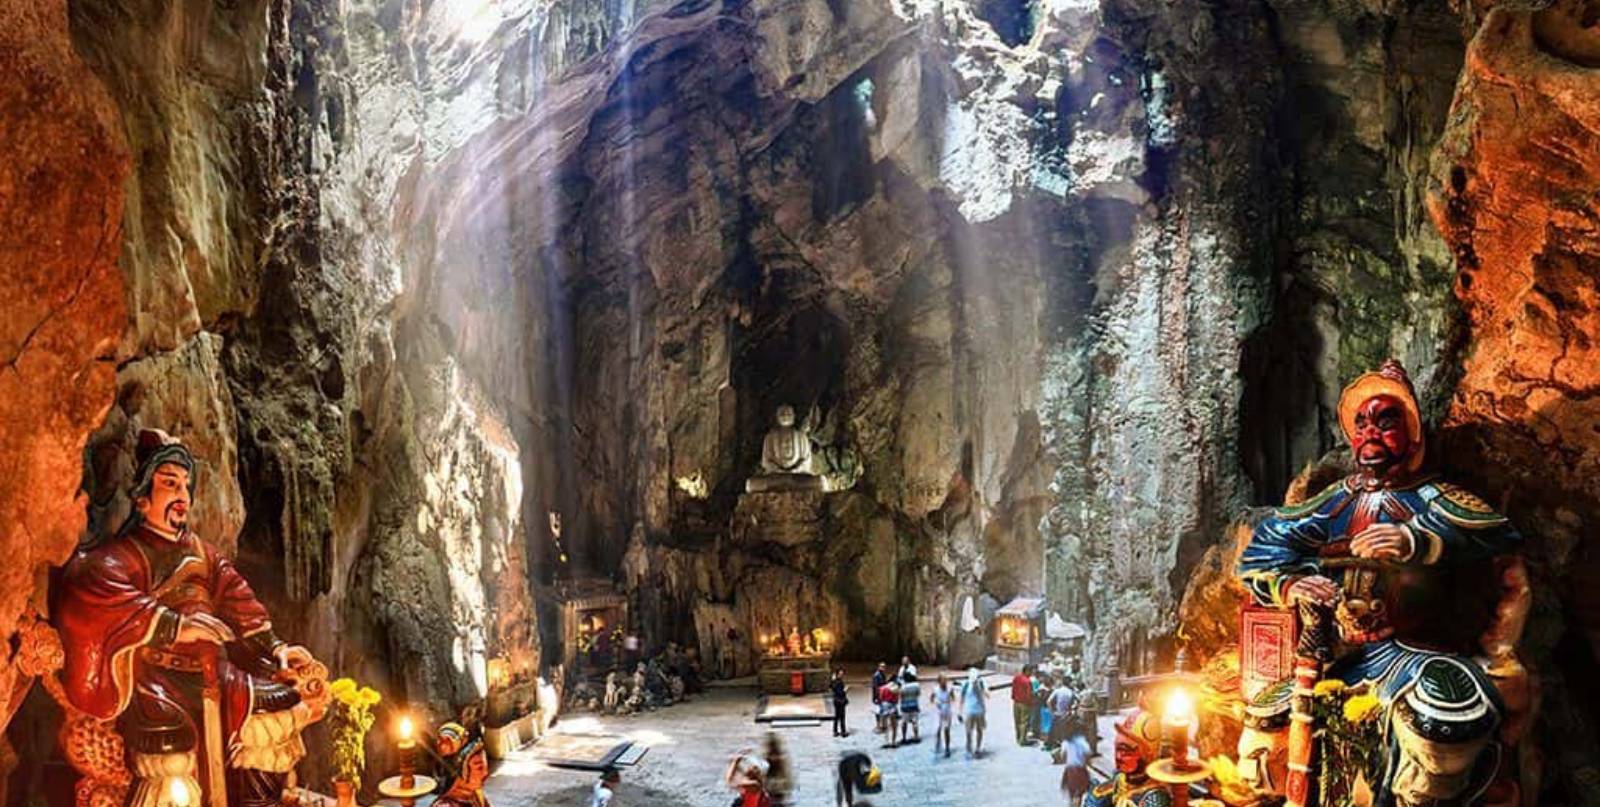 Marble Mountain (ngũ hành sơn) in Danang city, Vietnam